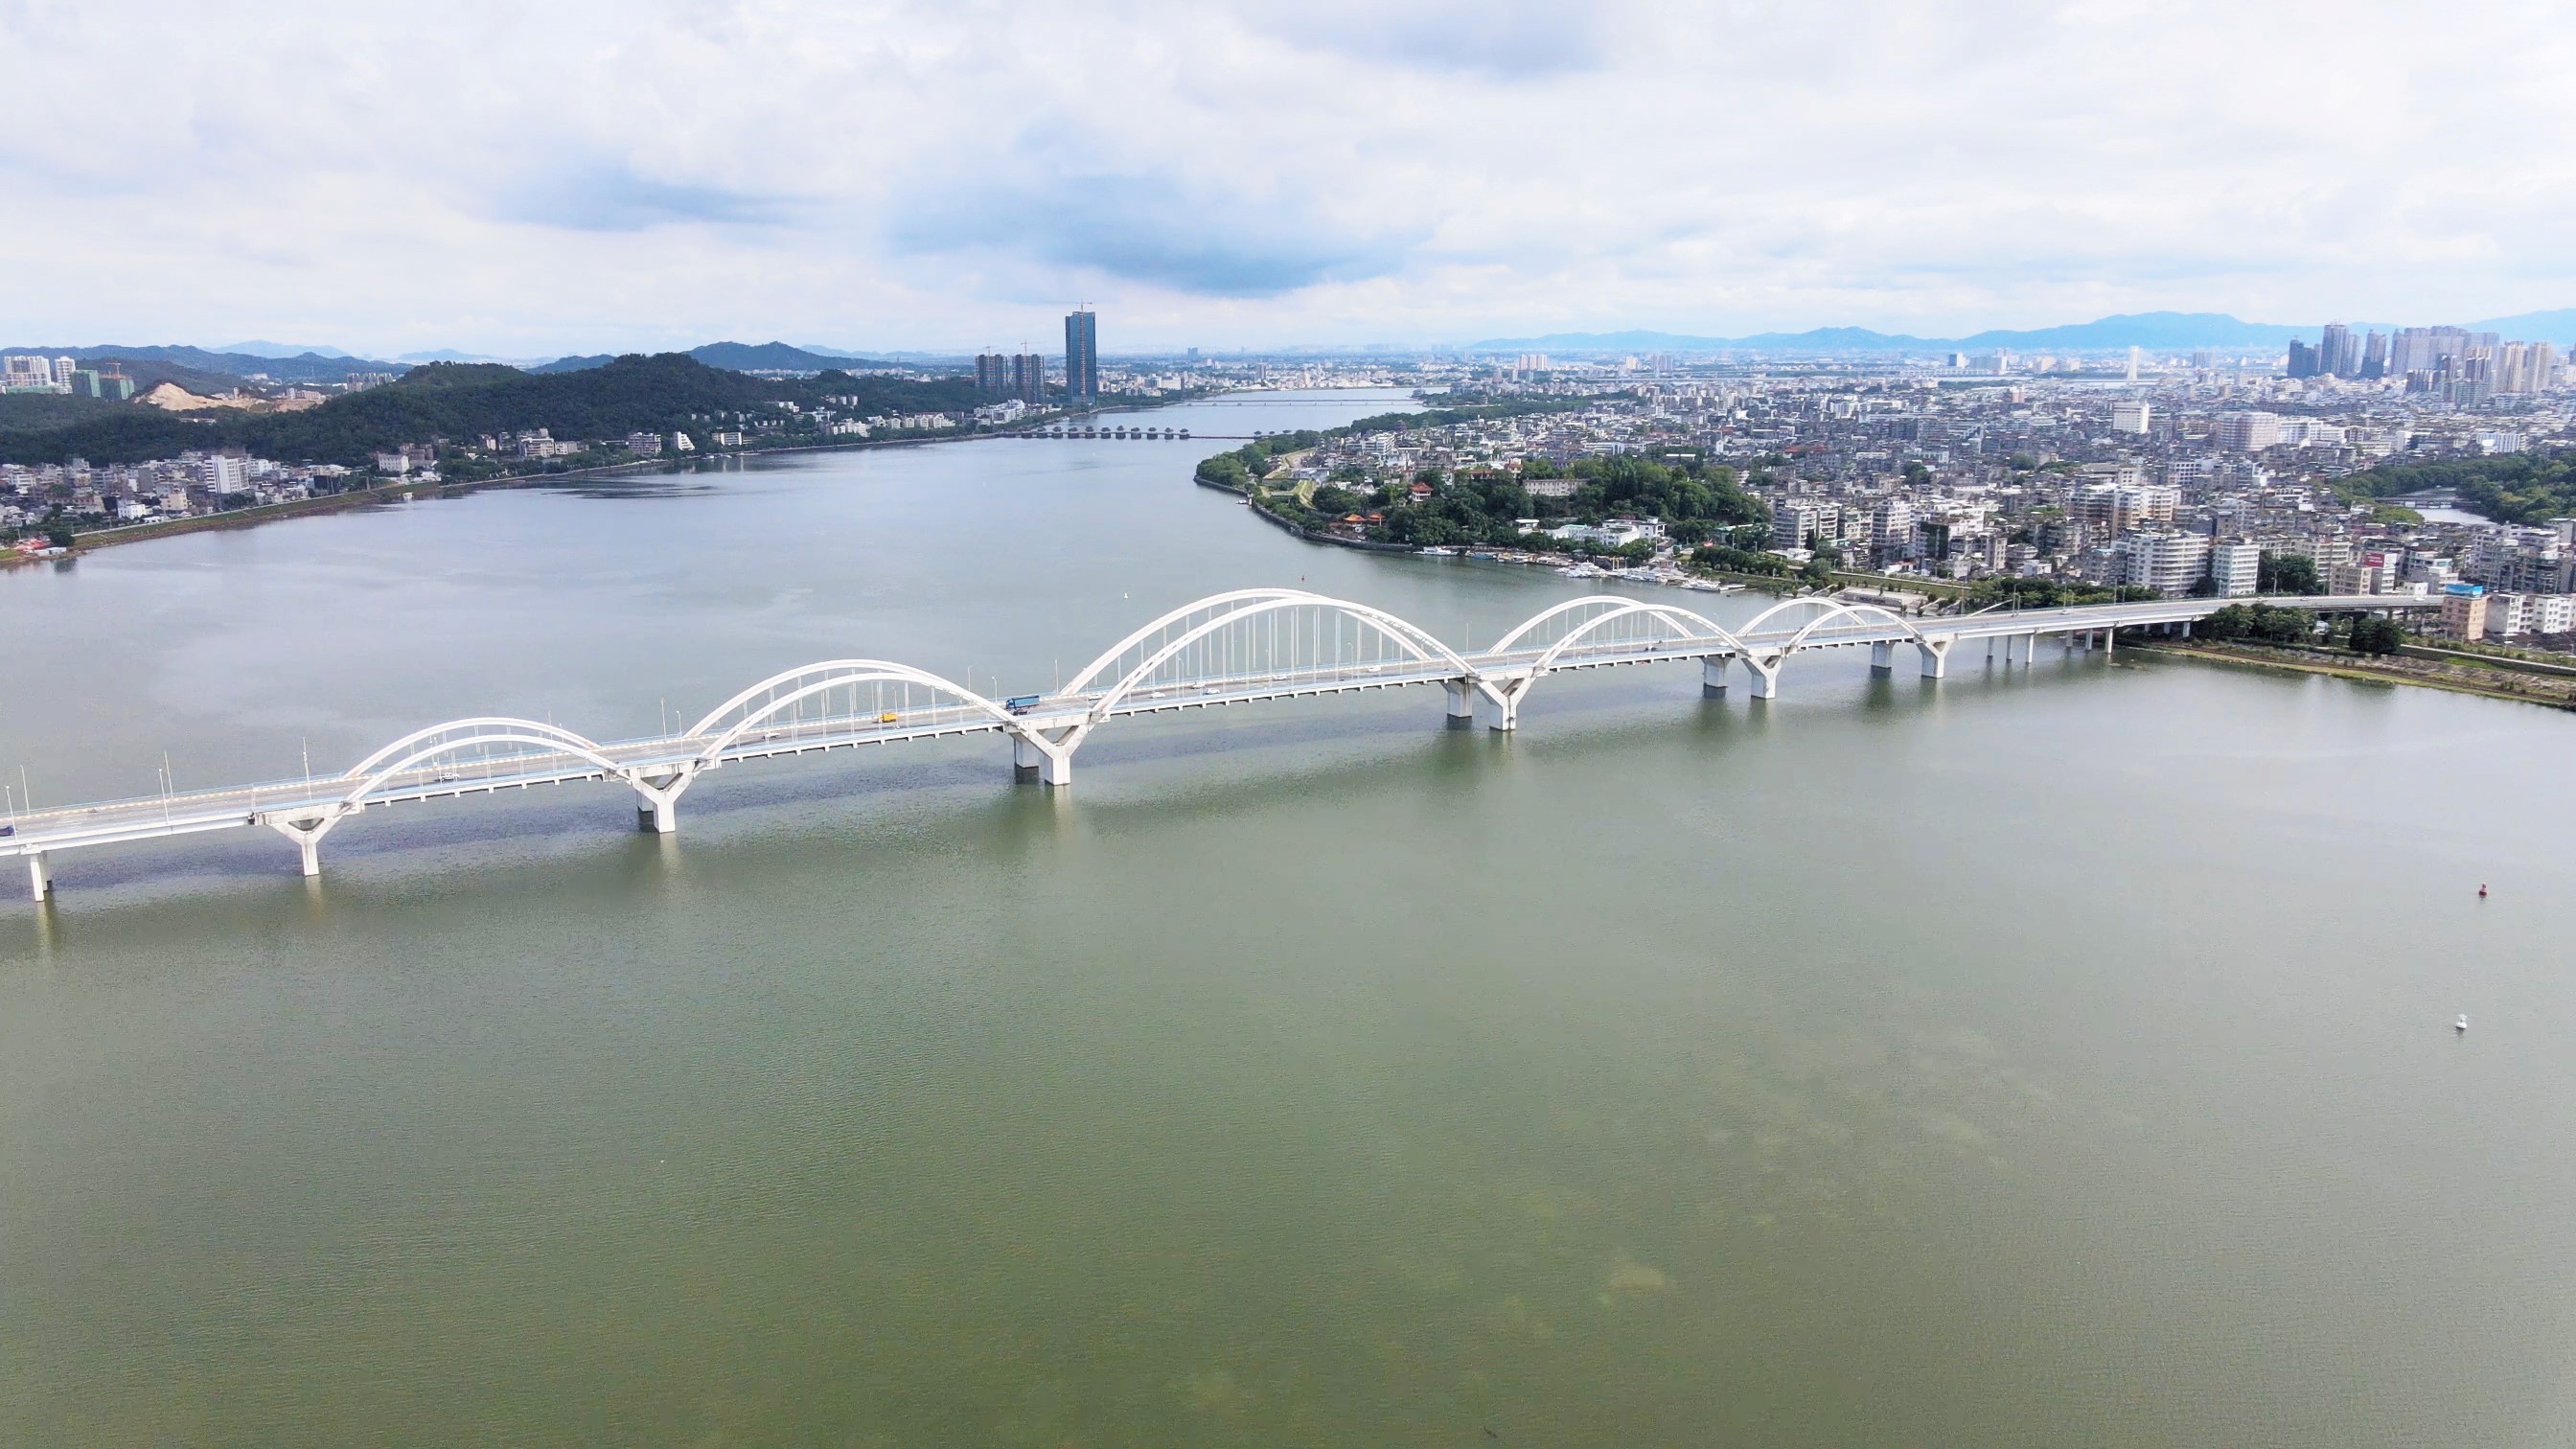 作为建设"全国示范河湖"的重要一环,潮州市以建设韩江"一江两岸"碧道